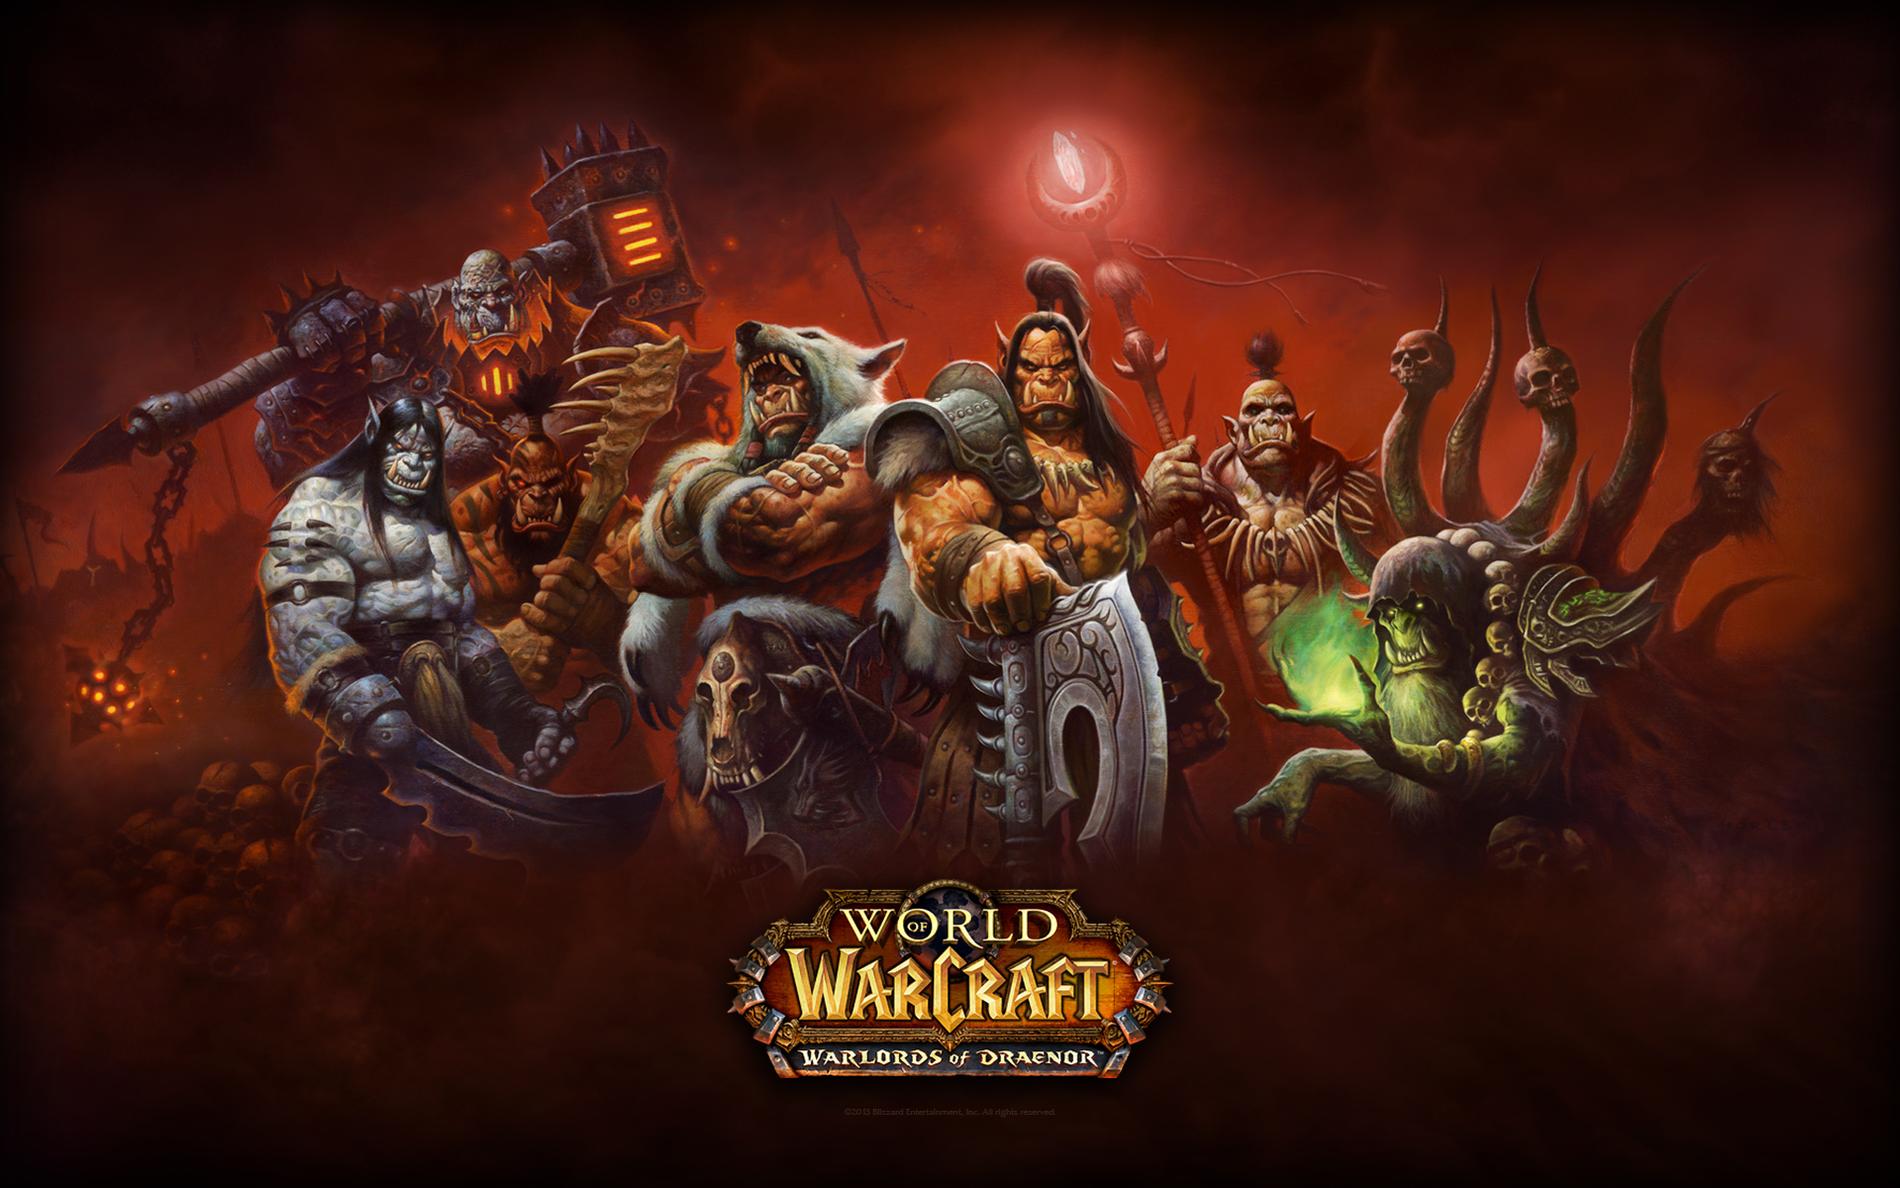 I onlinespel förekommer ofta en hbtq-fobisk jargong. På bilden: kommande ”World of Warcraft”-expansionen ”Warlords of Draenor”.